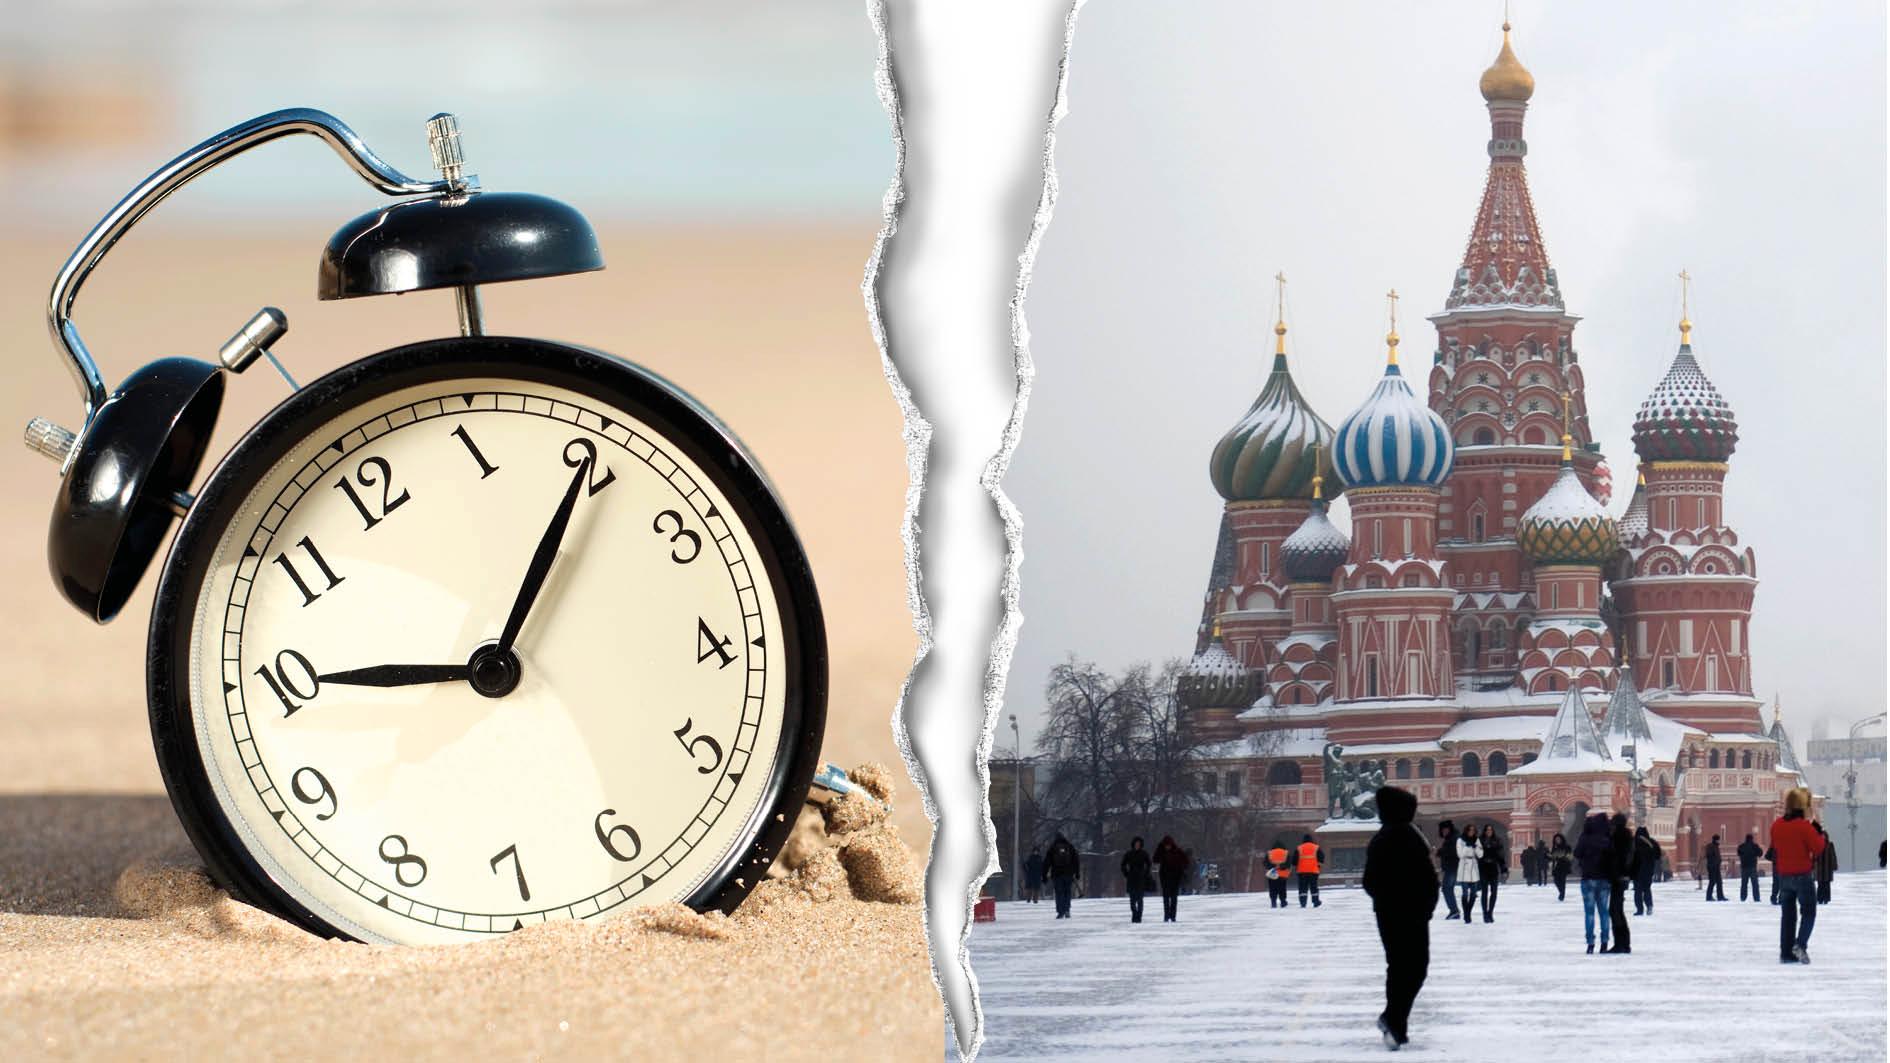 Med ständig sommartid skulle vi ta ett steg närmare österut. Närmare Ryssland tidsmässigt, medan tidsförskjutningen mot Storbritannien och USA ökar. Det är ett skäl till att skrota förslaget om ”ständig sommartid”, skriver gruppen Normaltid alltid.